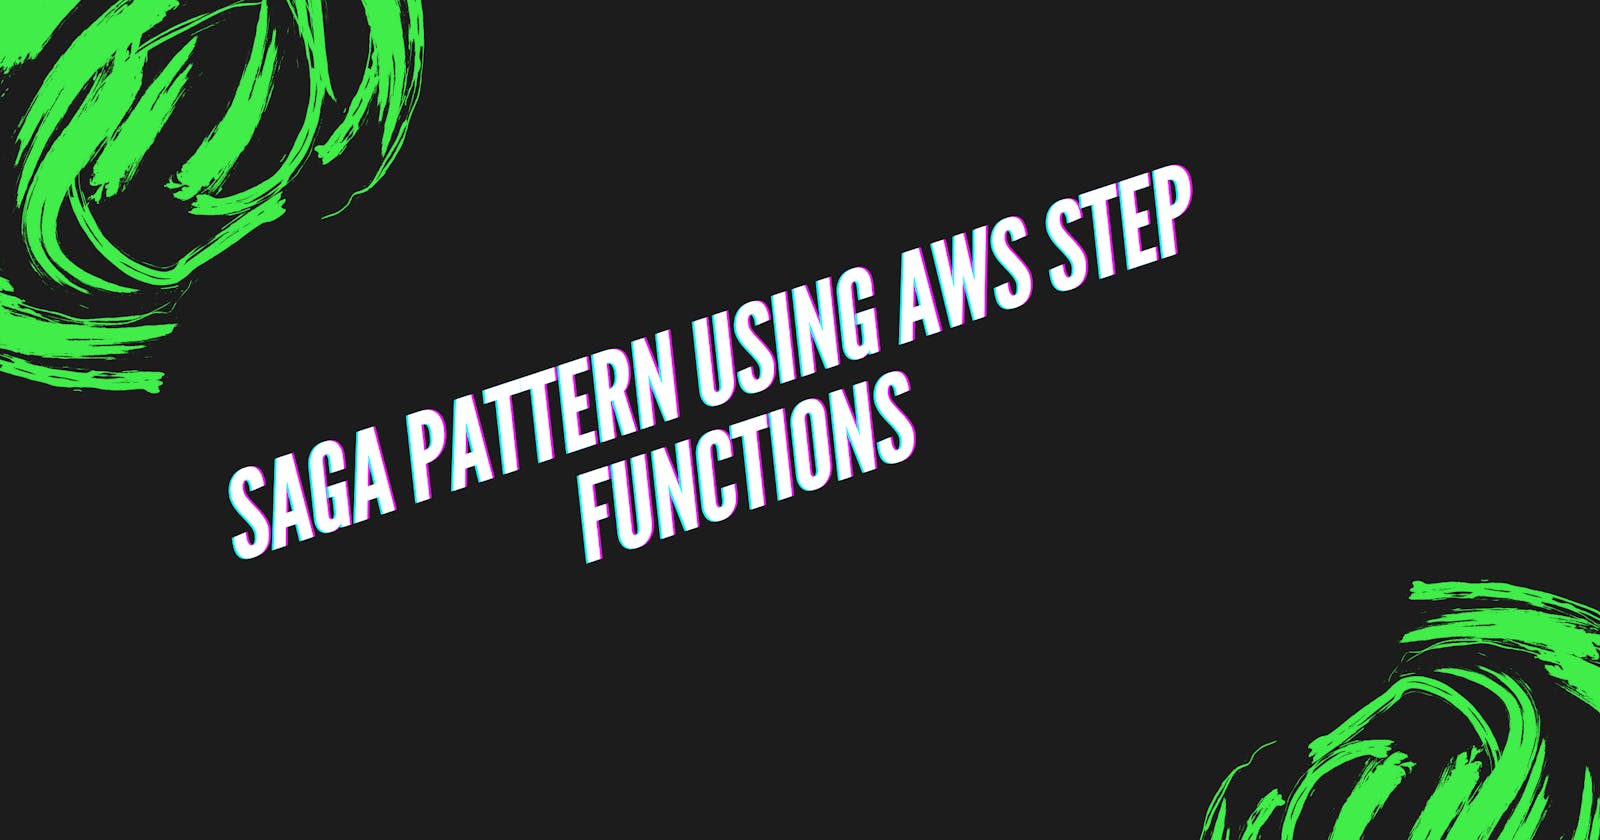 Saga Pattern using AWS Step Functions